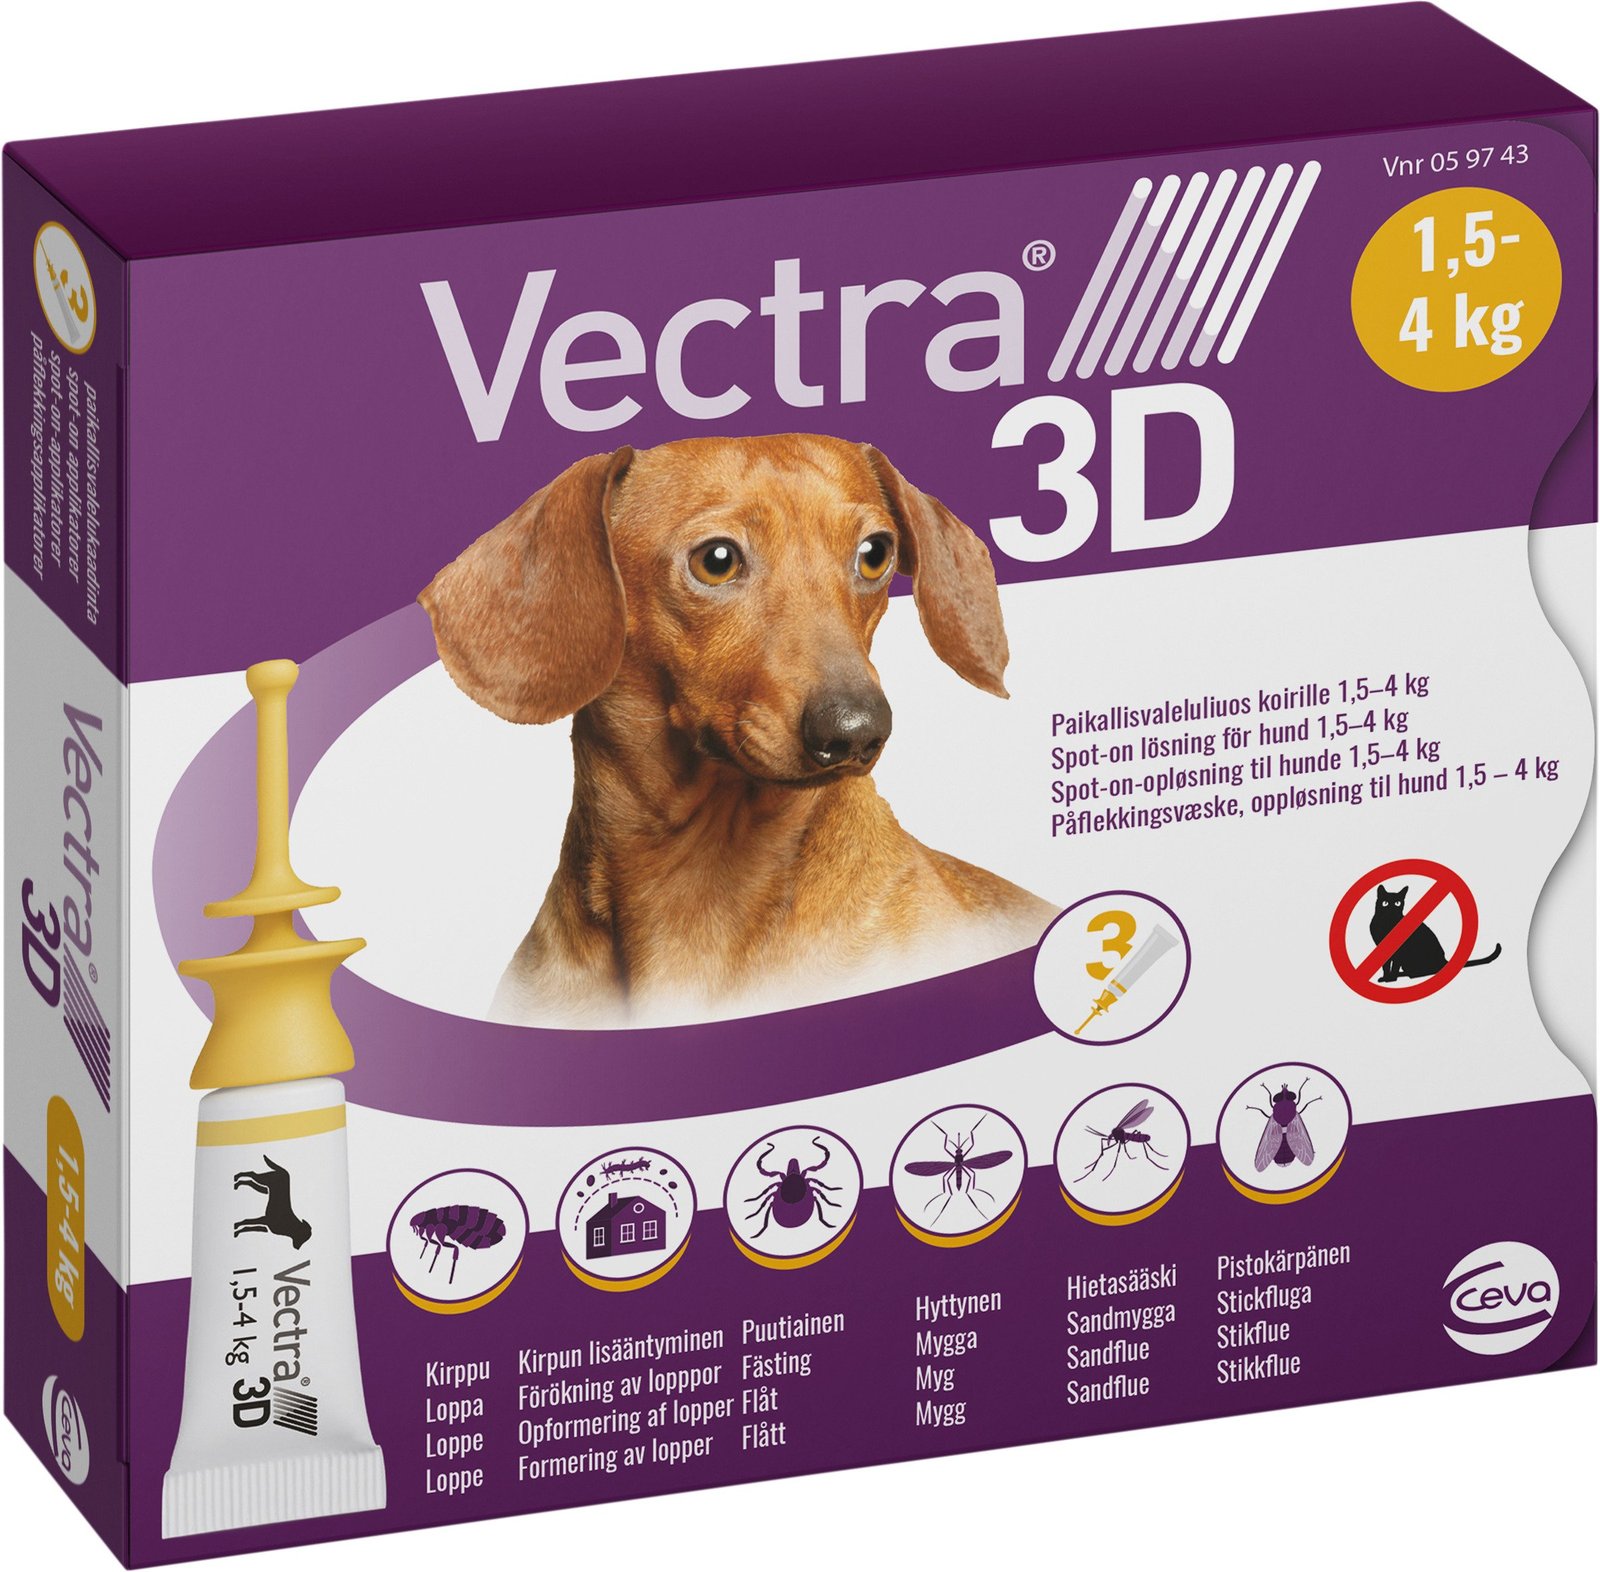 Vectra 3D Hund 1,5-4 kg Spot-on lösning 3 x 0,8 ml